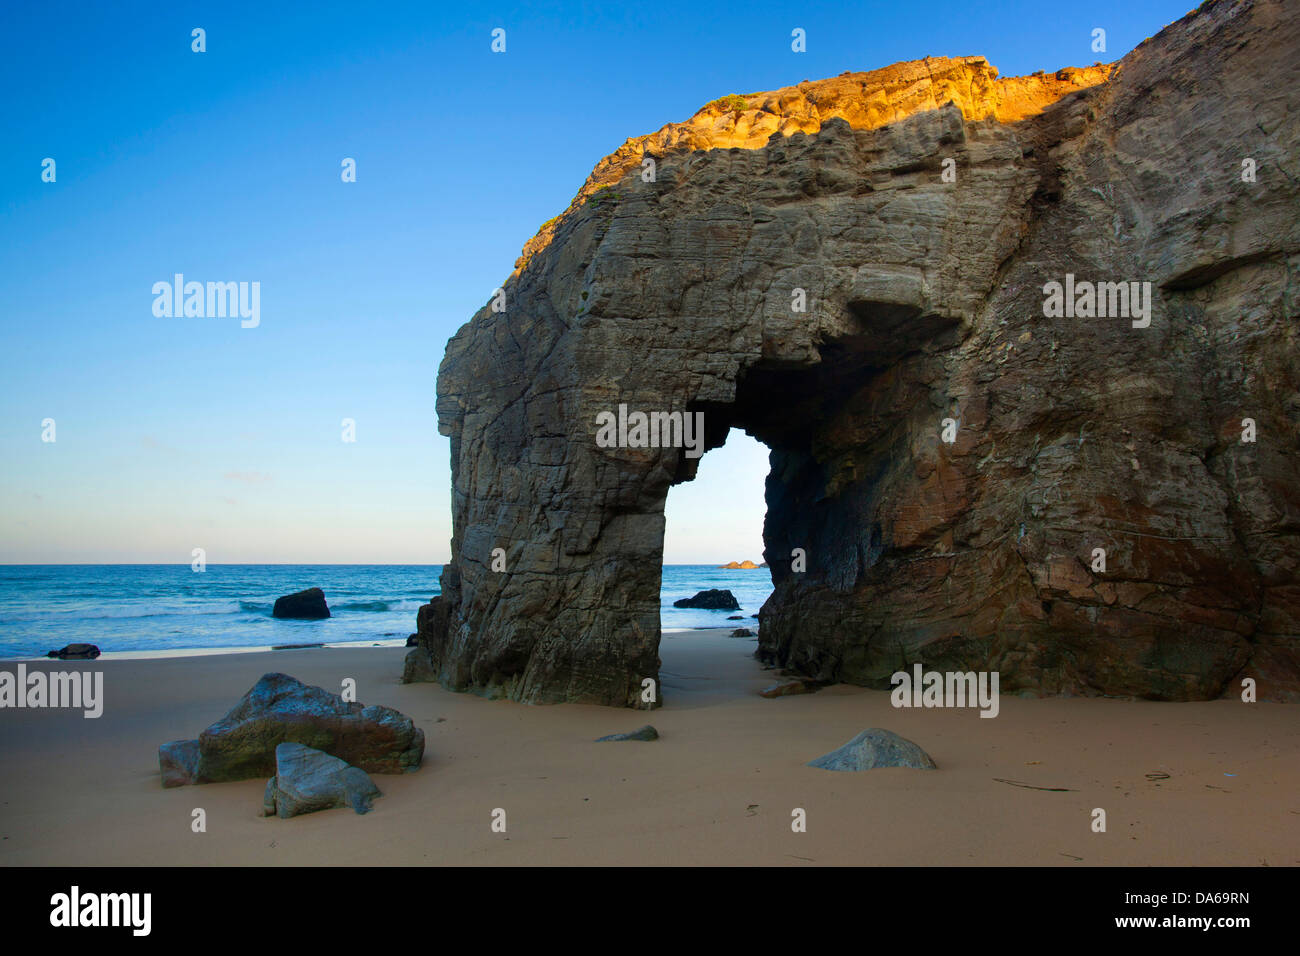 La Côte Sauvage, Francia, Europa, Bretagna, dipartimento Morbihan, costa, rock, Cliff, formazione di roccia, arco, mare, la luce del mattino Foto Stock